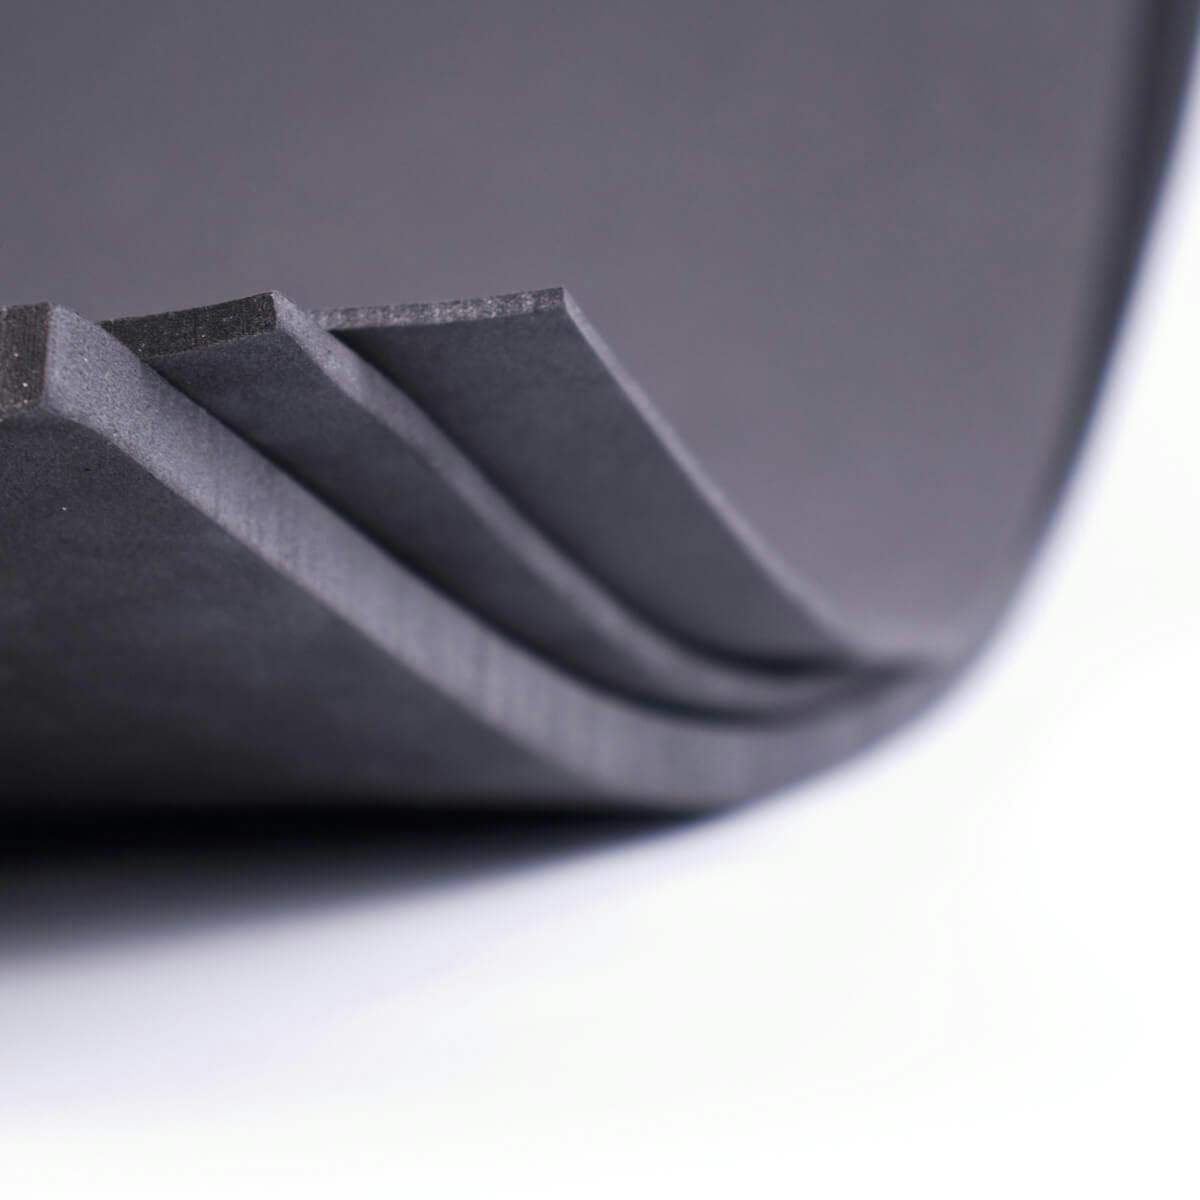 Detail on the bended EVA foam corner